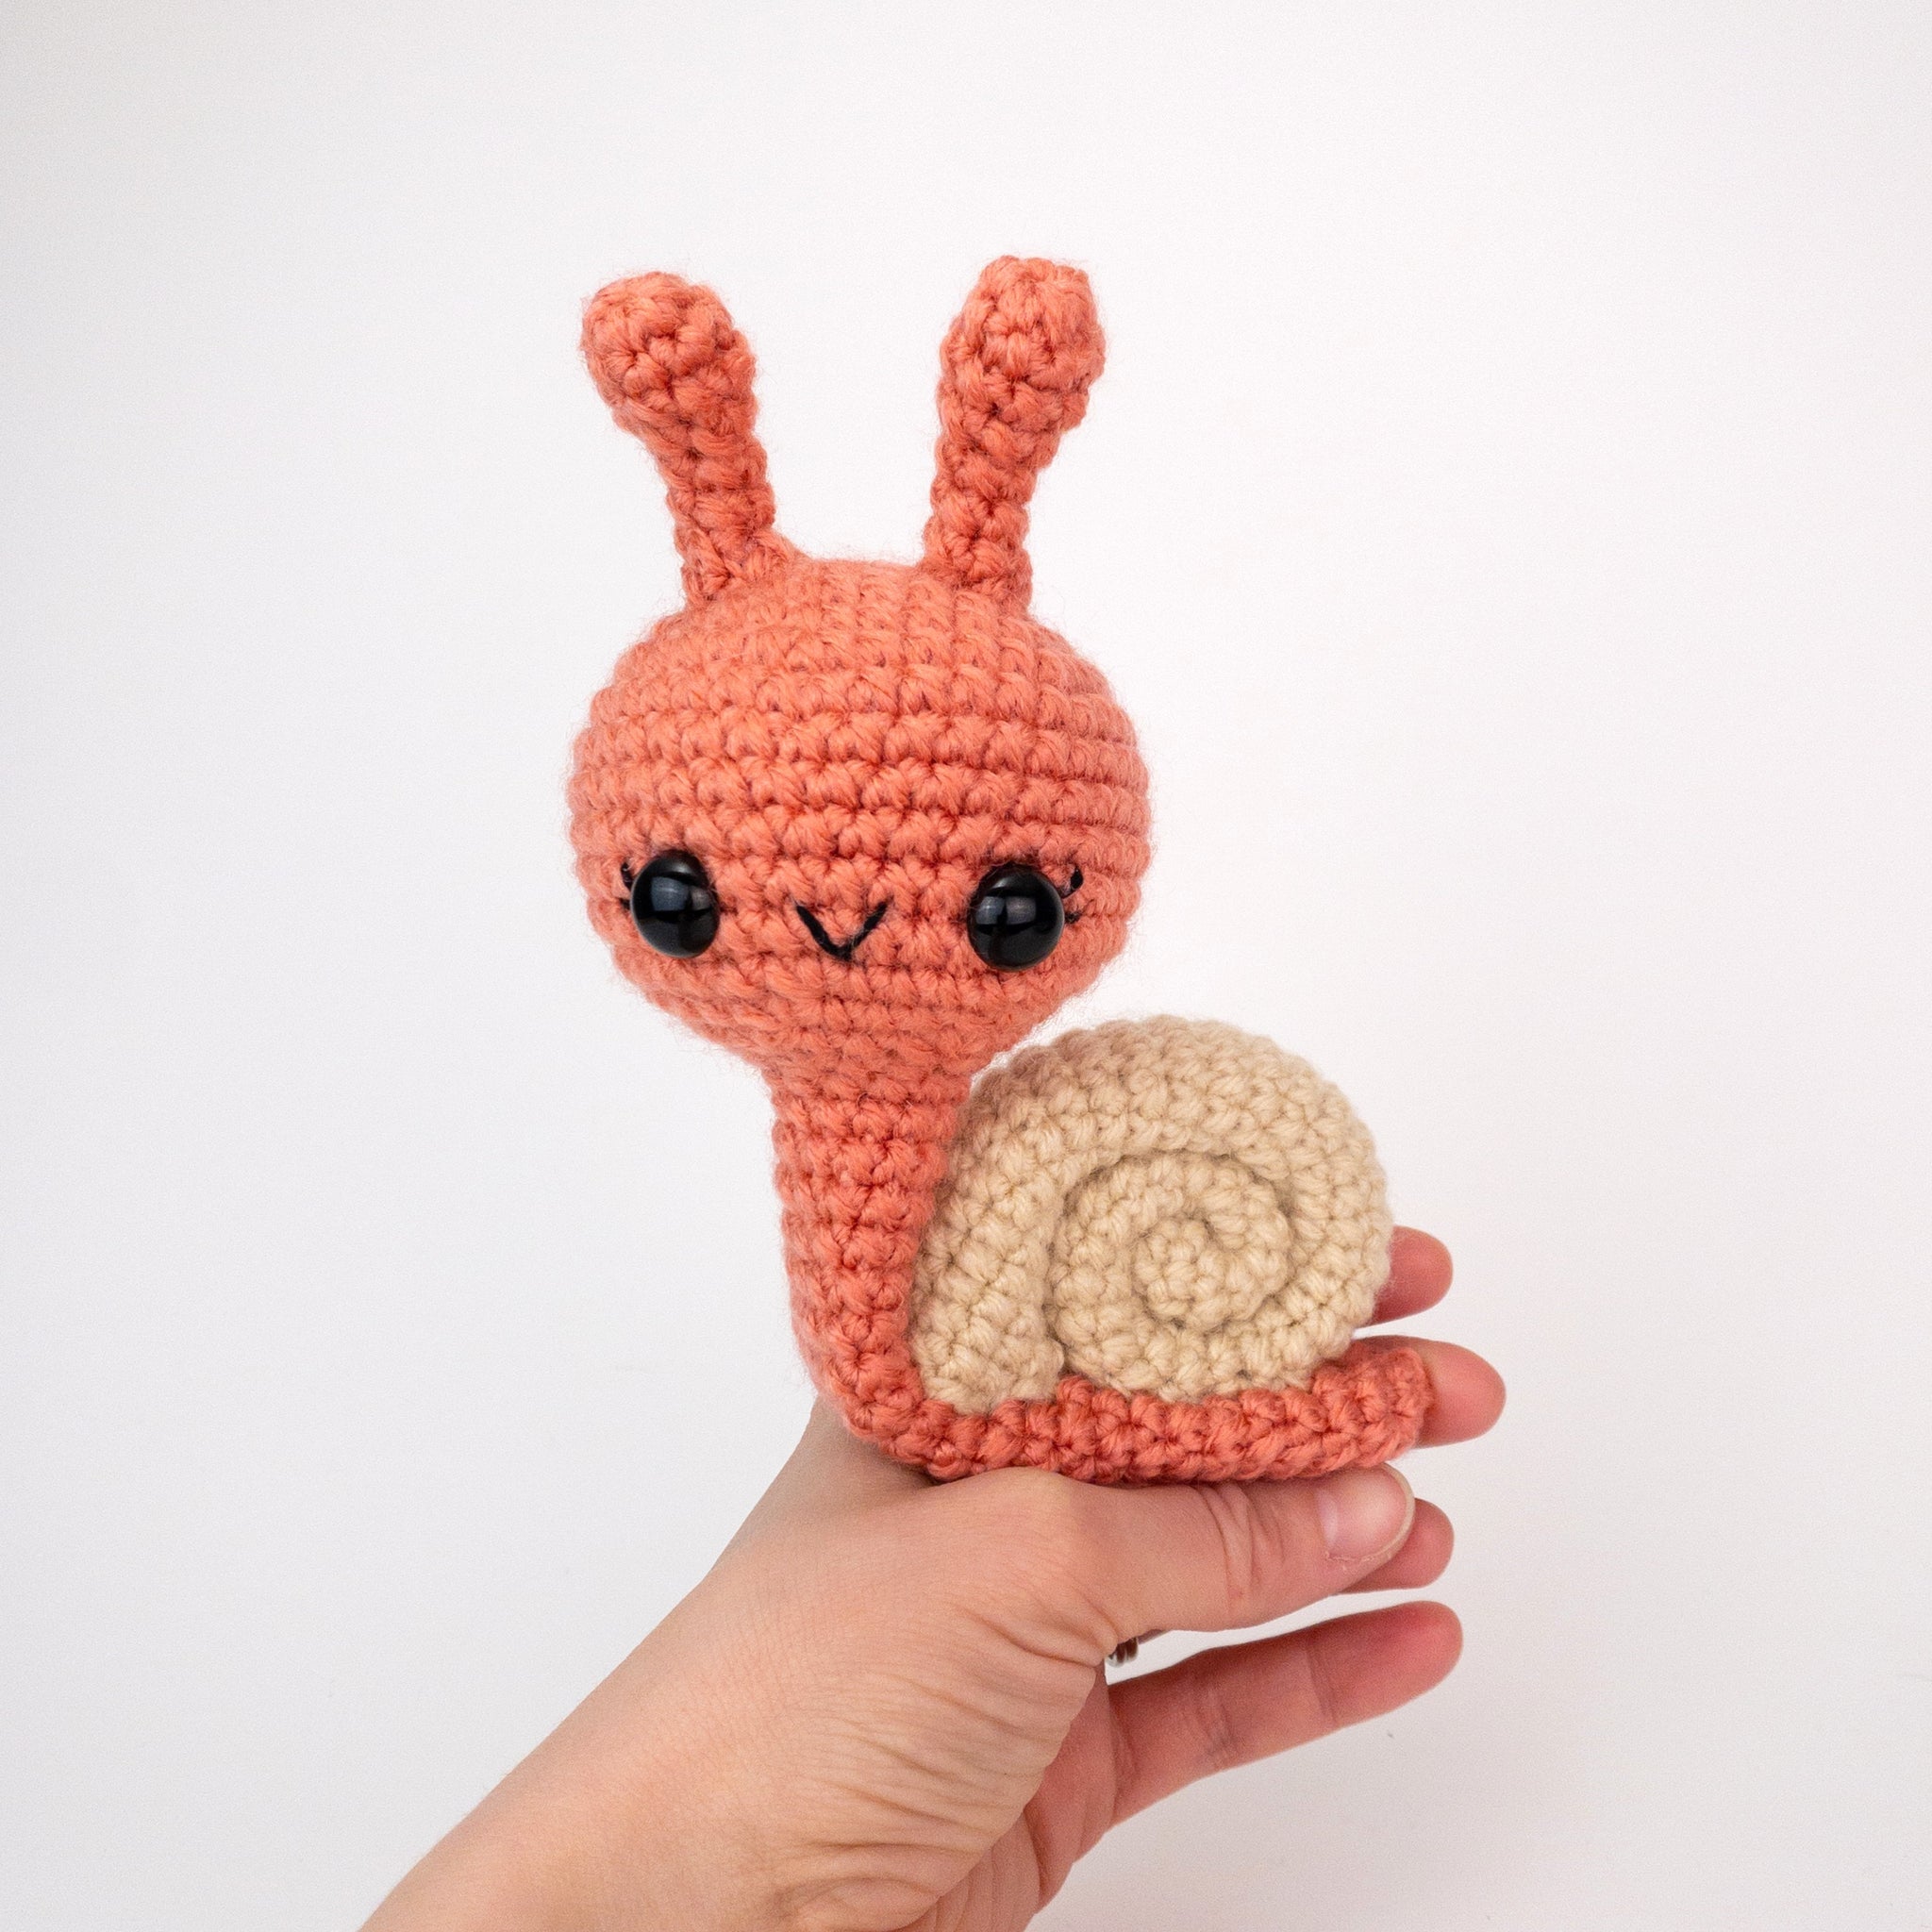 Crochet Tutorial: Snail's Pace Granny Square - YARNutopia & More YARNutopia  & More